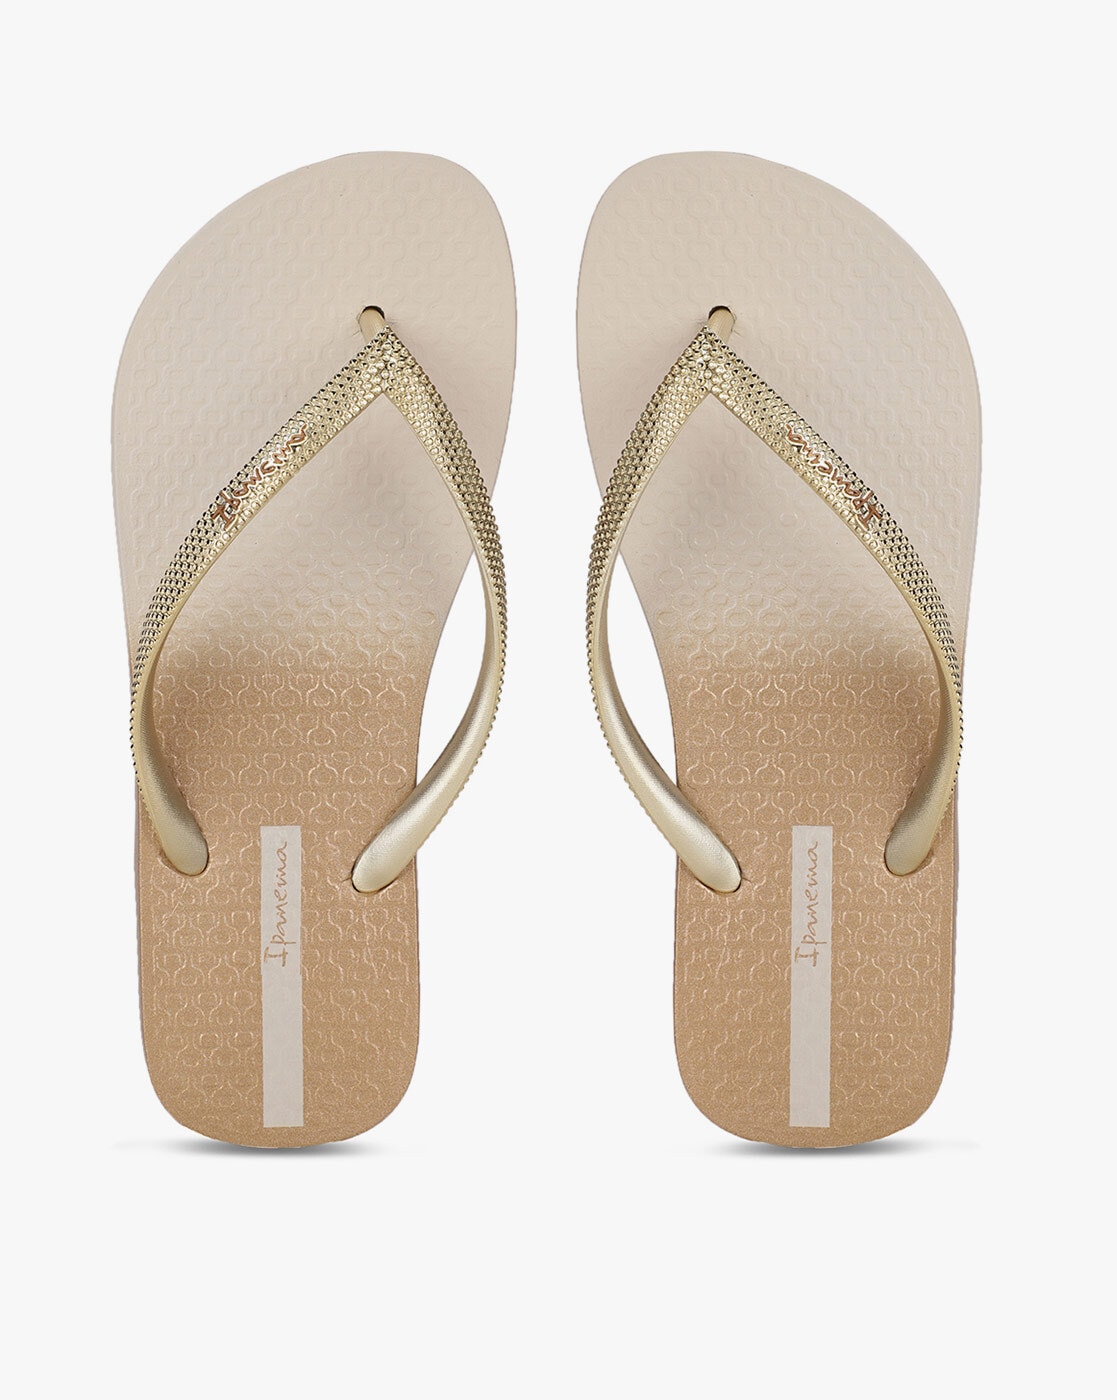 Voel me slecht Kracht capaciteit Buy Gold Flip Flop & Slippers for Women by IPANEMA Online | Ajio.com